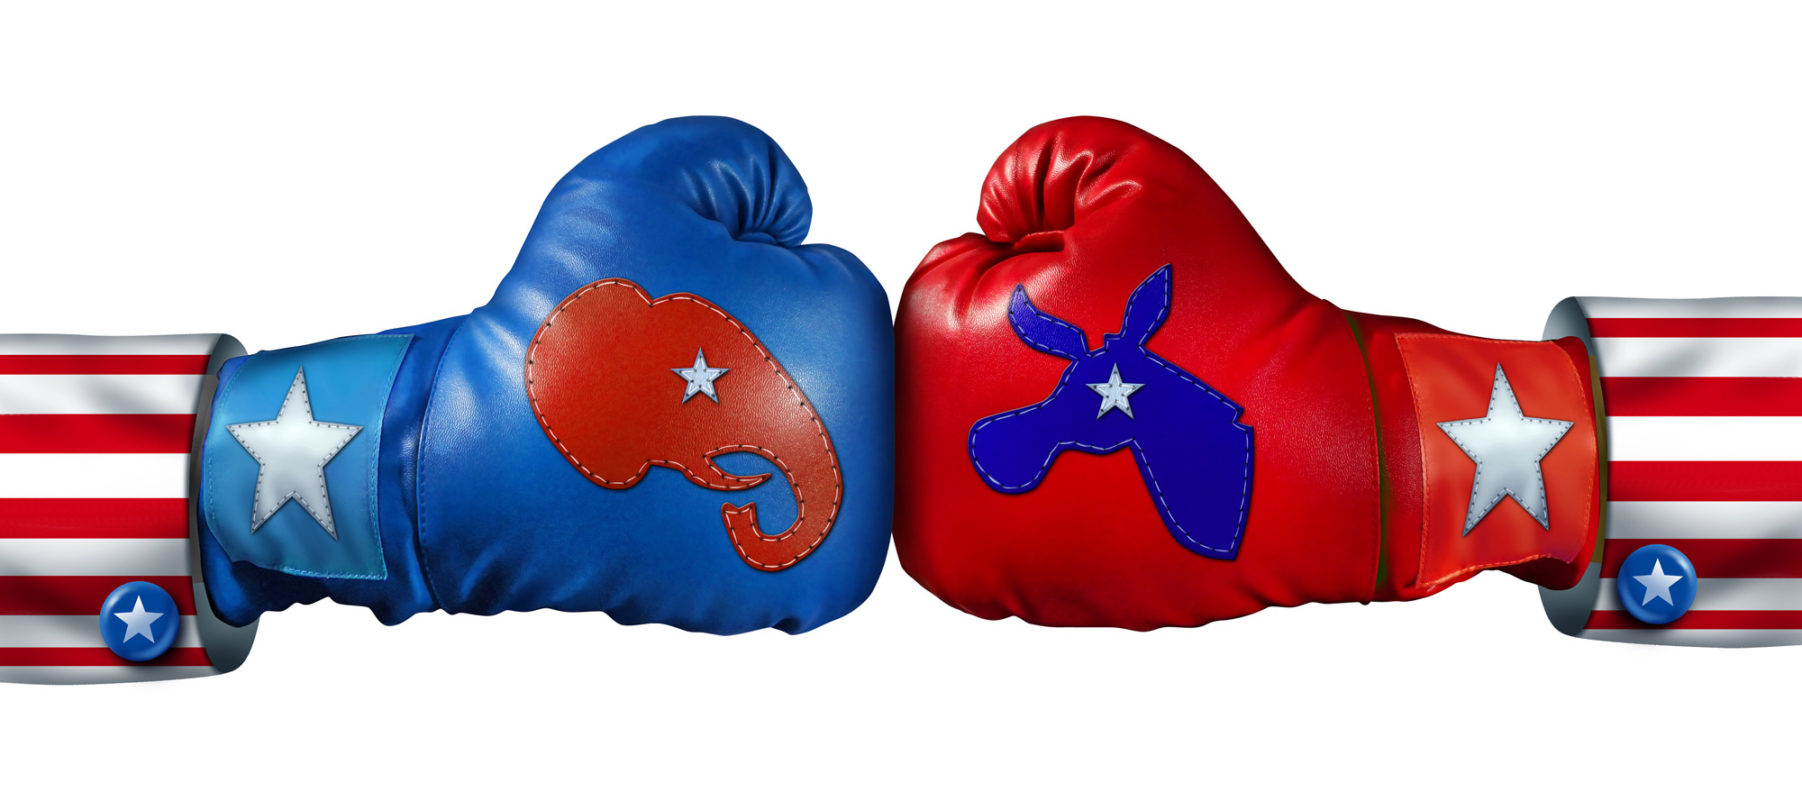 Bilde av to boksehansker med logoene til Republikanerne og Demokratene slår mot hverandre.